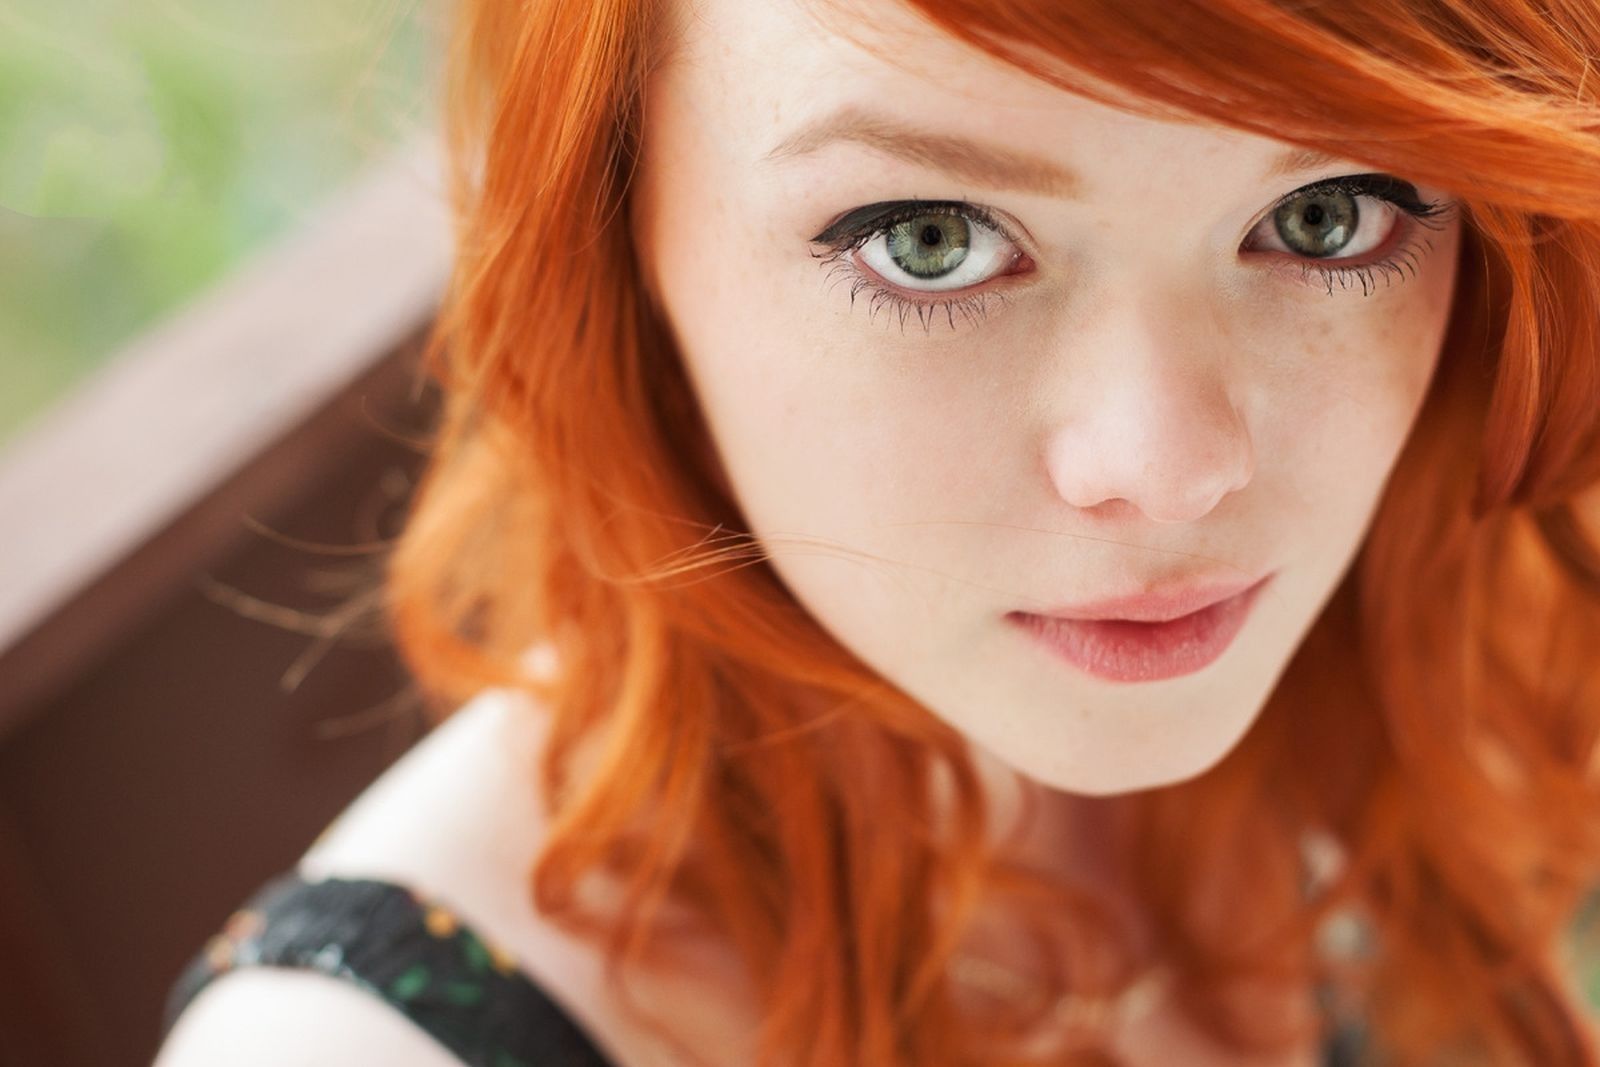 Cute Redhead Girl – Telegraph